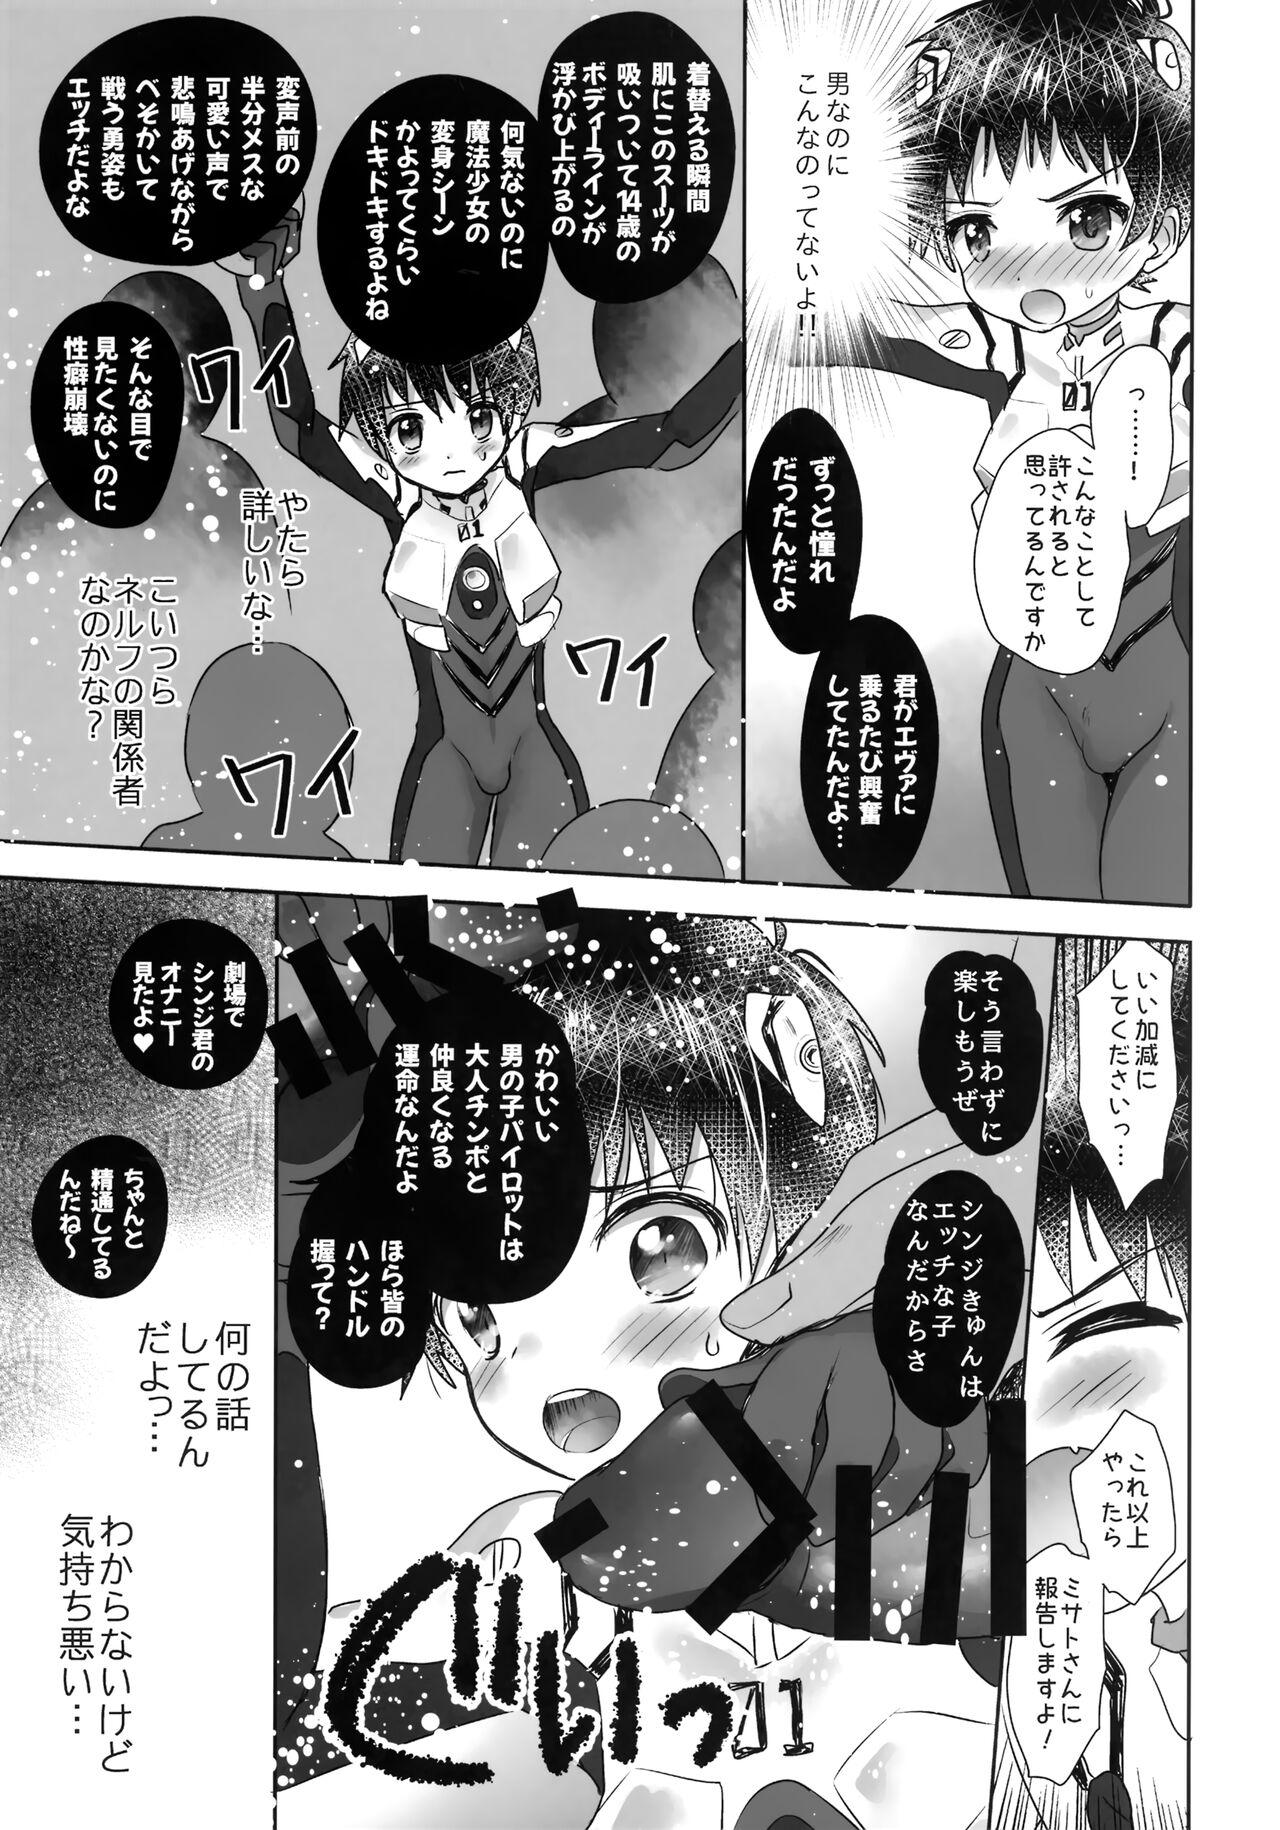 Hardsex Plugsuit o Kita Mama Notte Kure, Shinji. - Neon genesis evangelion Wam - Page 8